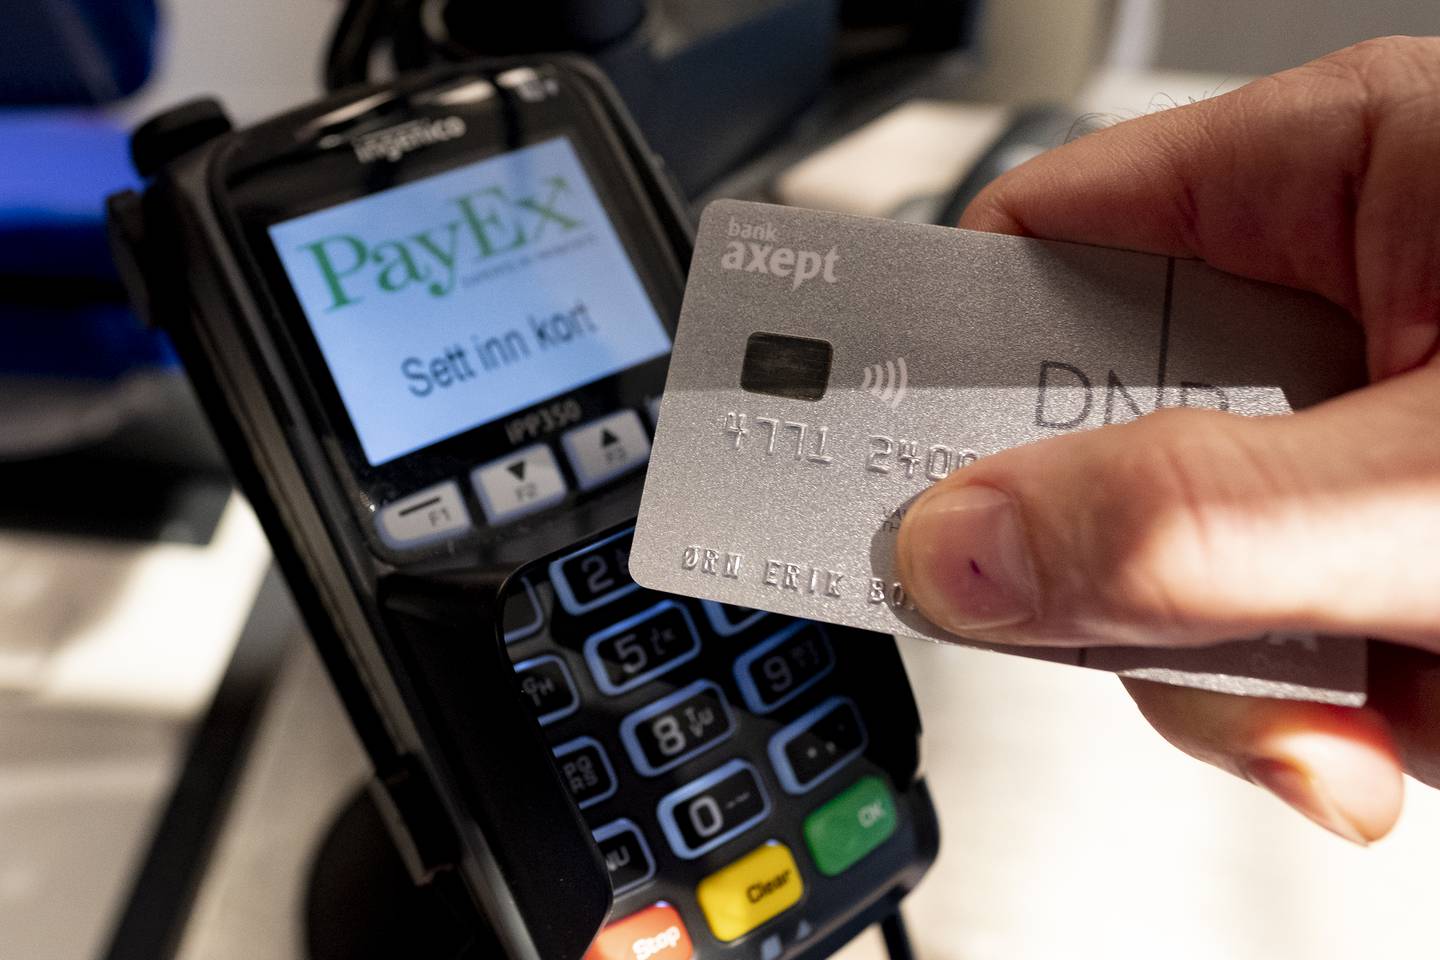 Mye er dyrere, men vi trekker ikke bankkortet sjeldnere av den grunn - i alle fall ikke ut fra kundedataene til SR-Bank